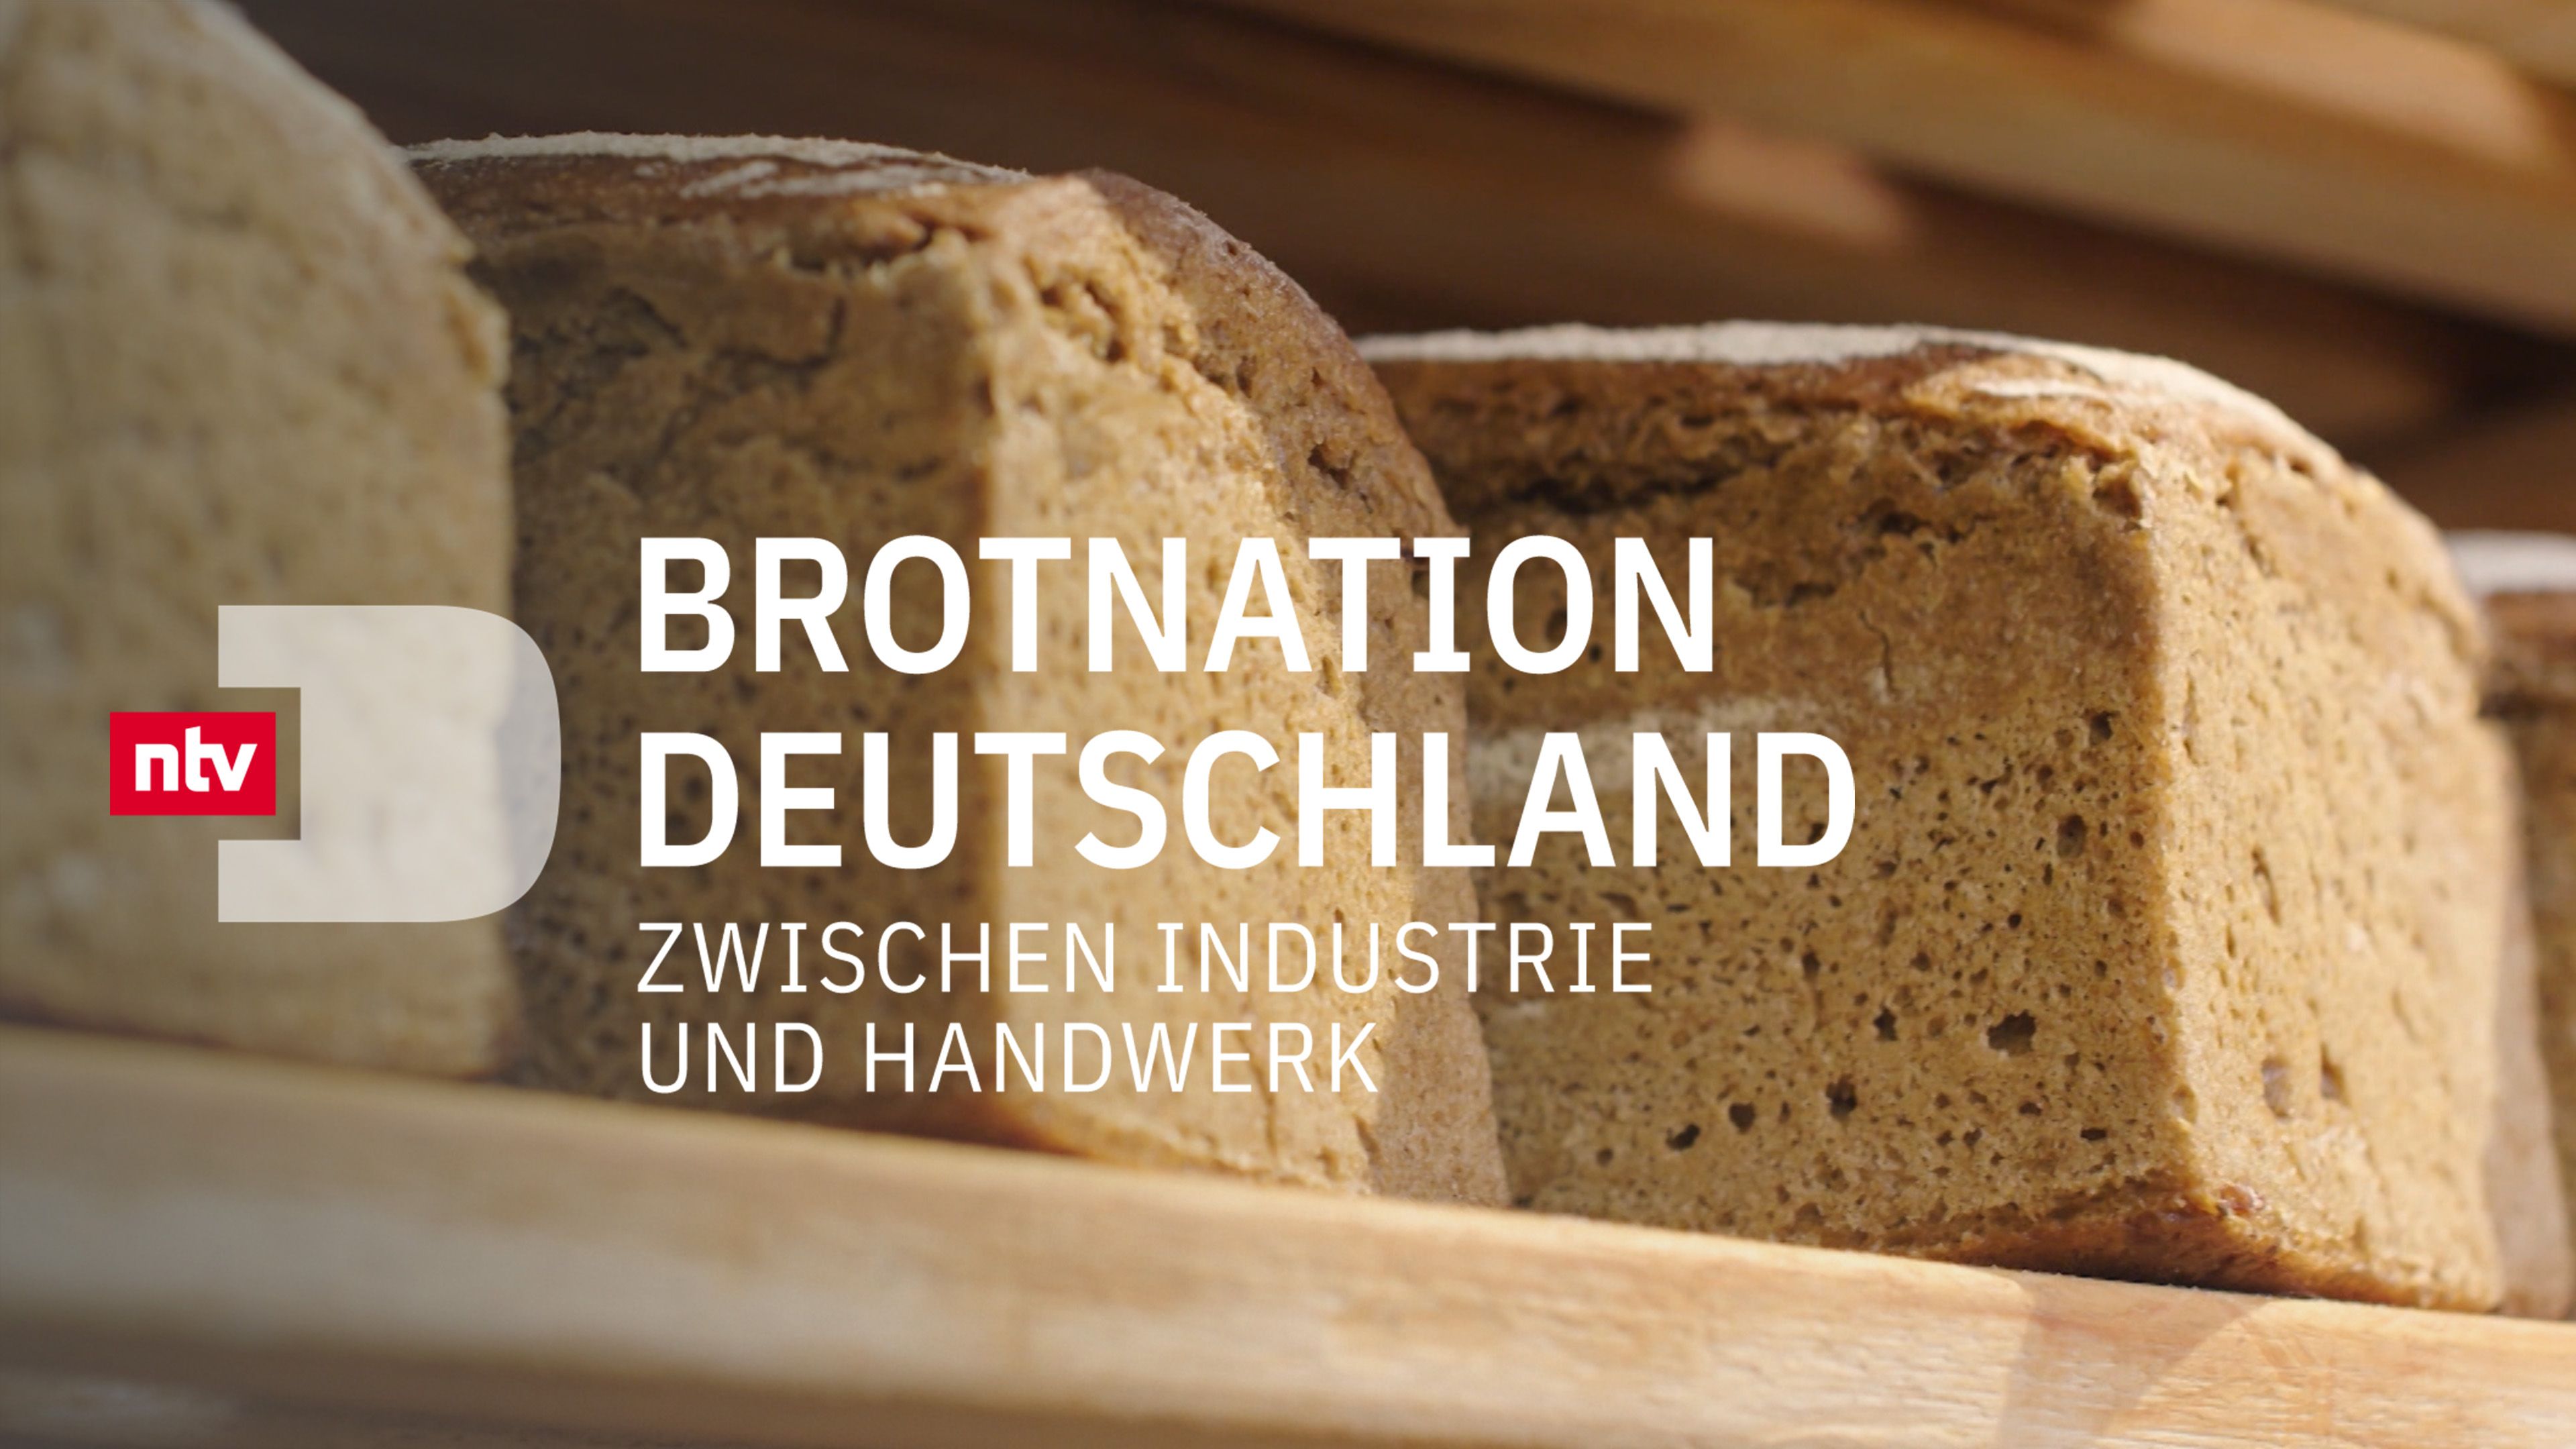 Brotnation Deutschland - Zwischen Industrie und Handwerk